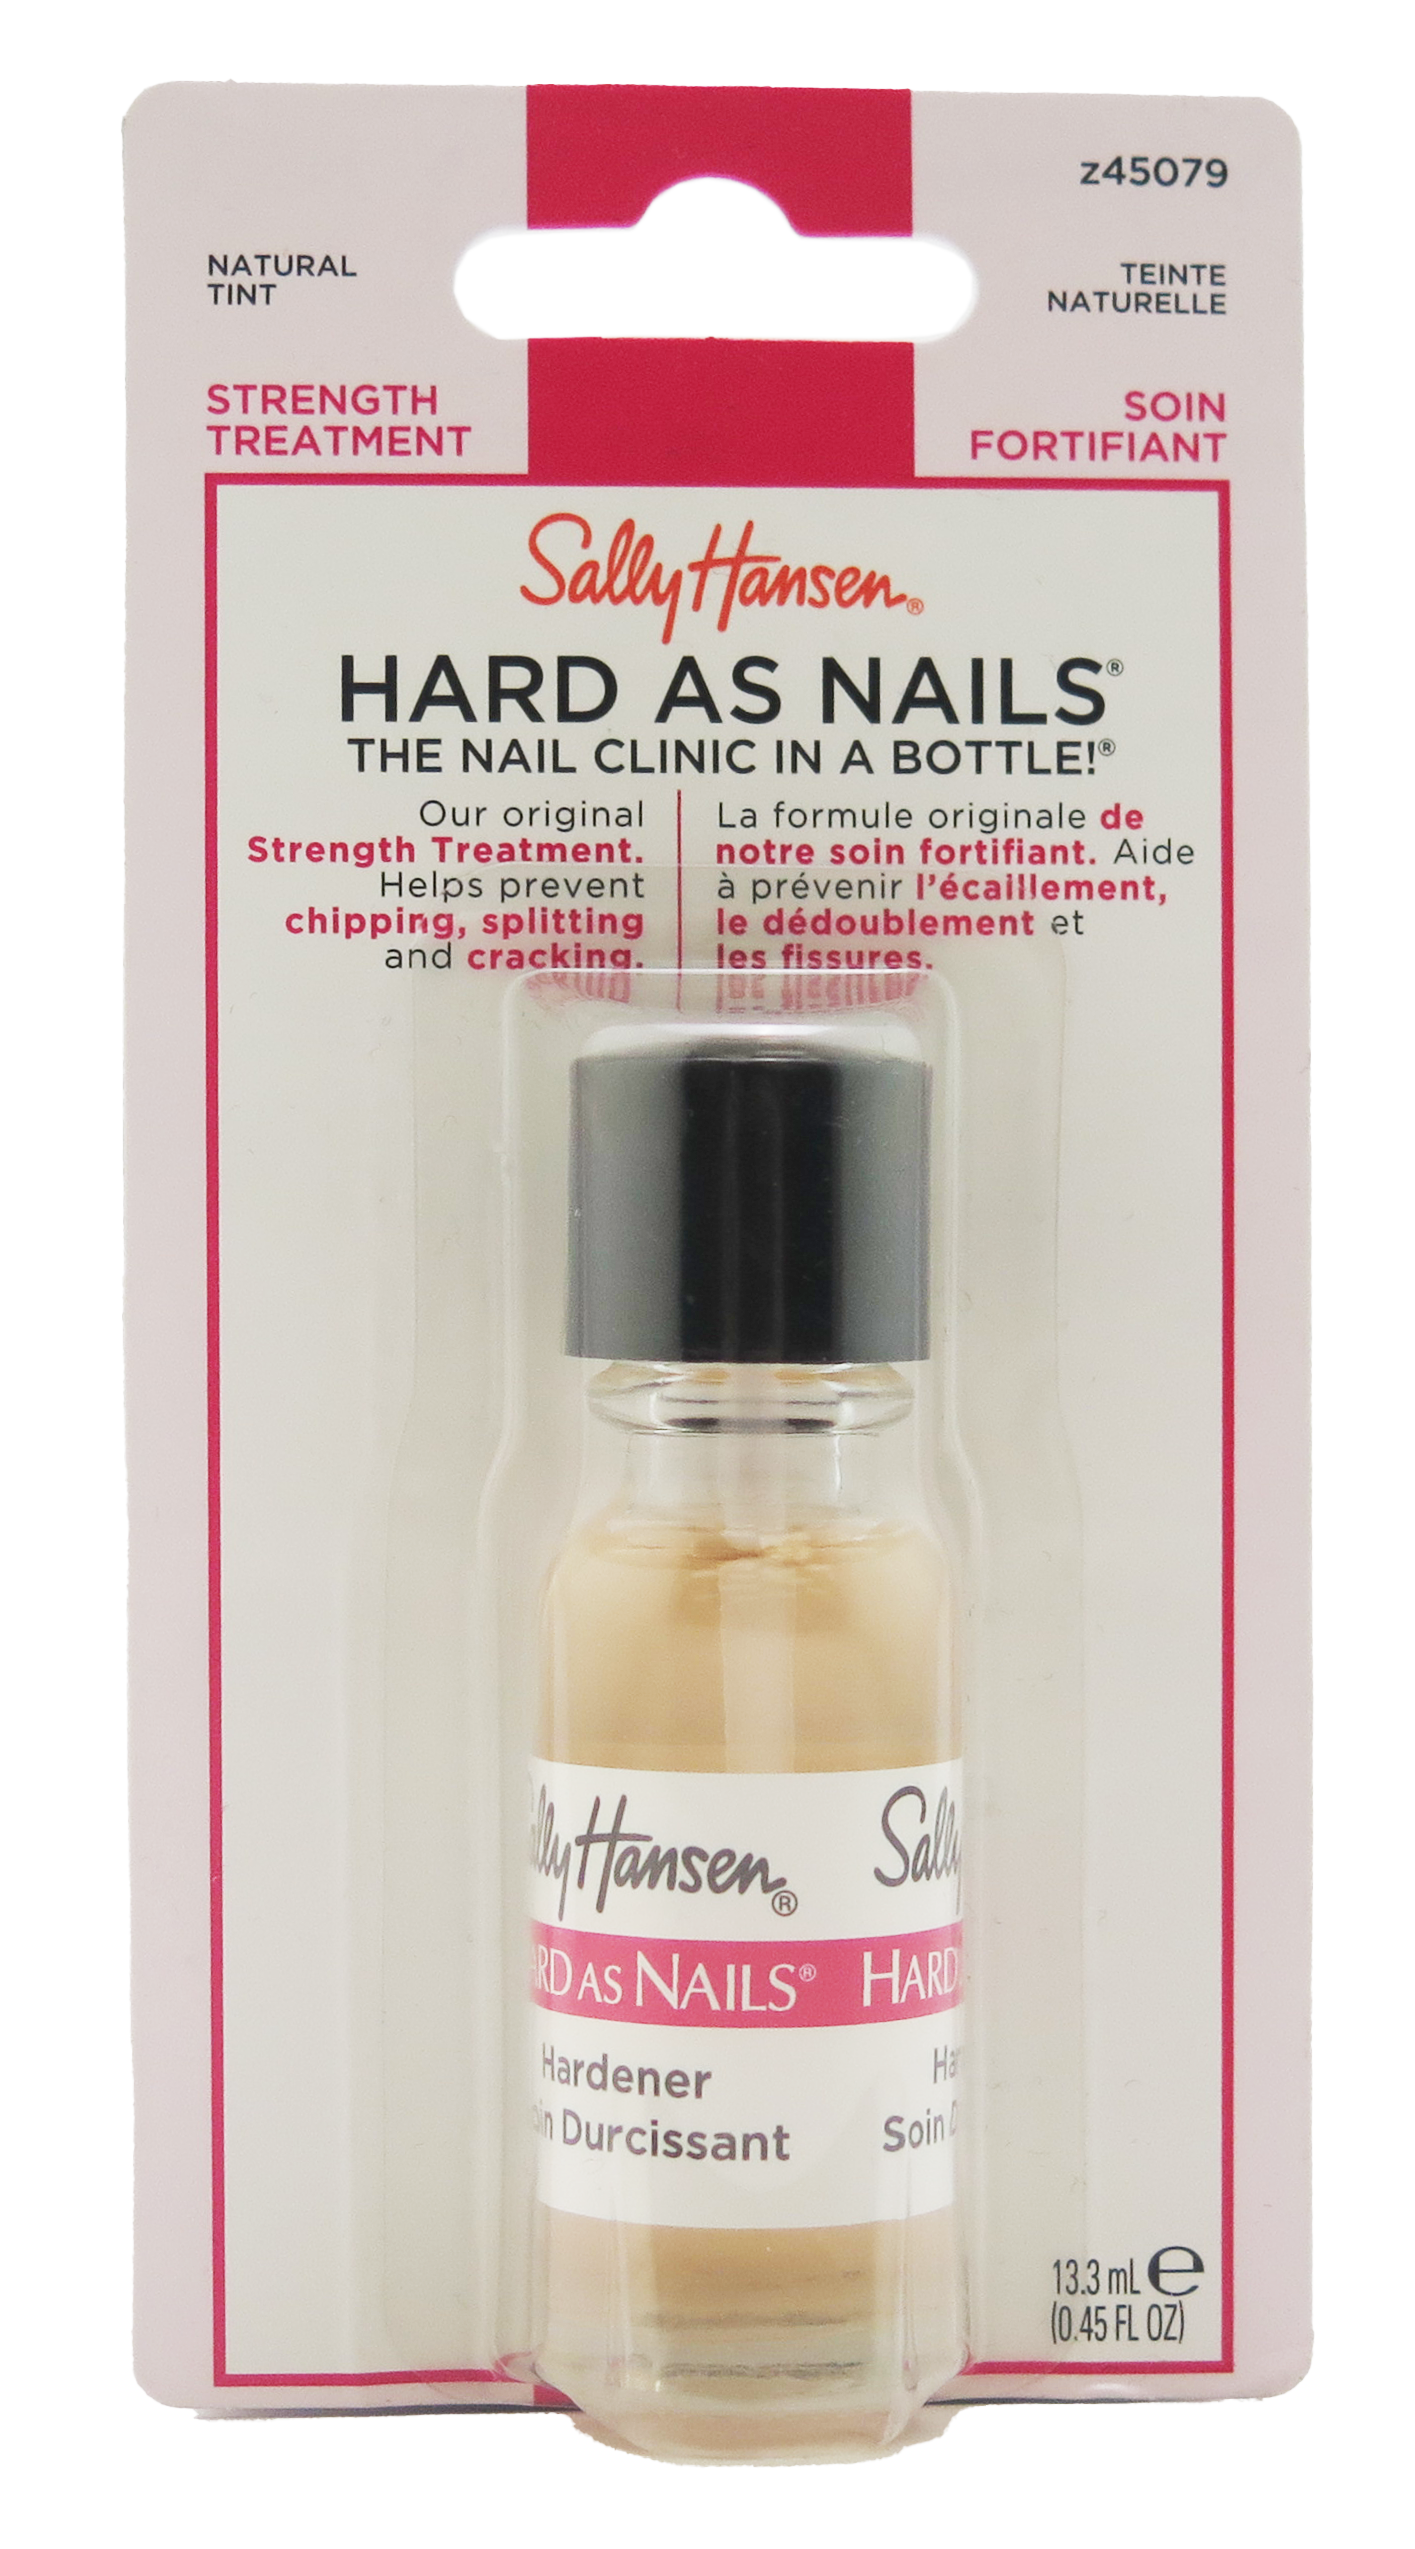 Sally Hansen Hard As Nails Natural Tint 0.45 fl oz